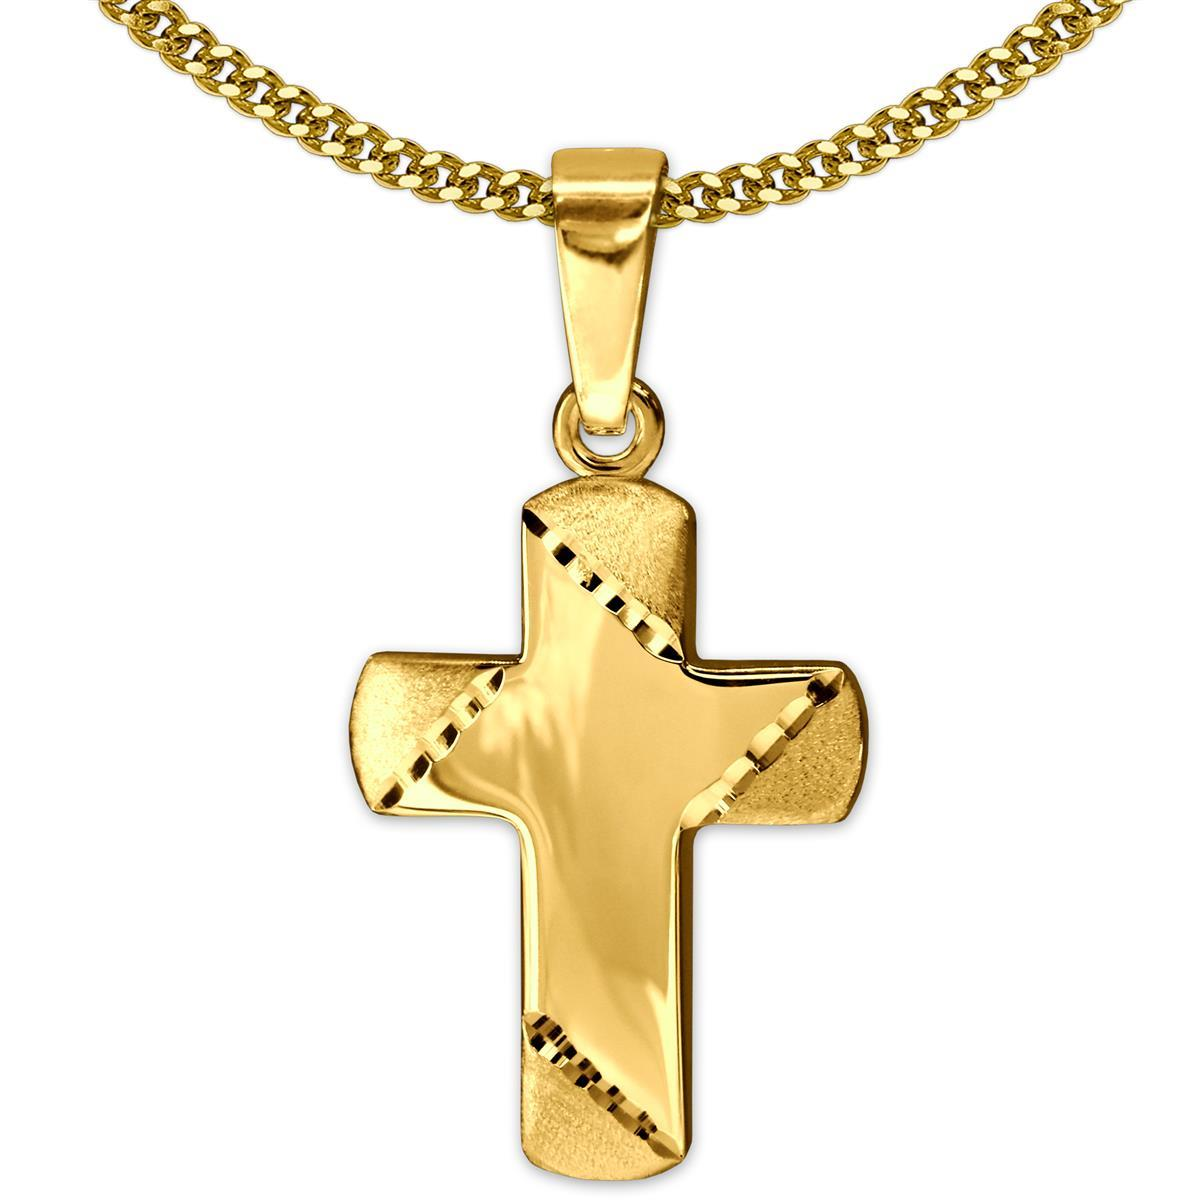 Goldener Anhänger Mini Kreuz 11 x 8 mm Balkenenden matt diamantiert, innen glänzend 333 GOLD 8 KARAT